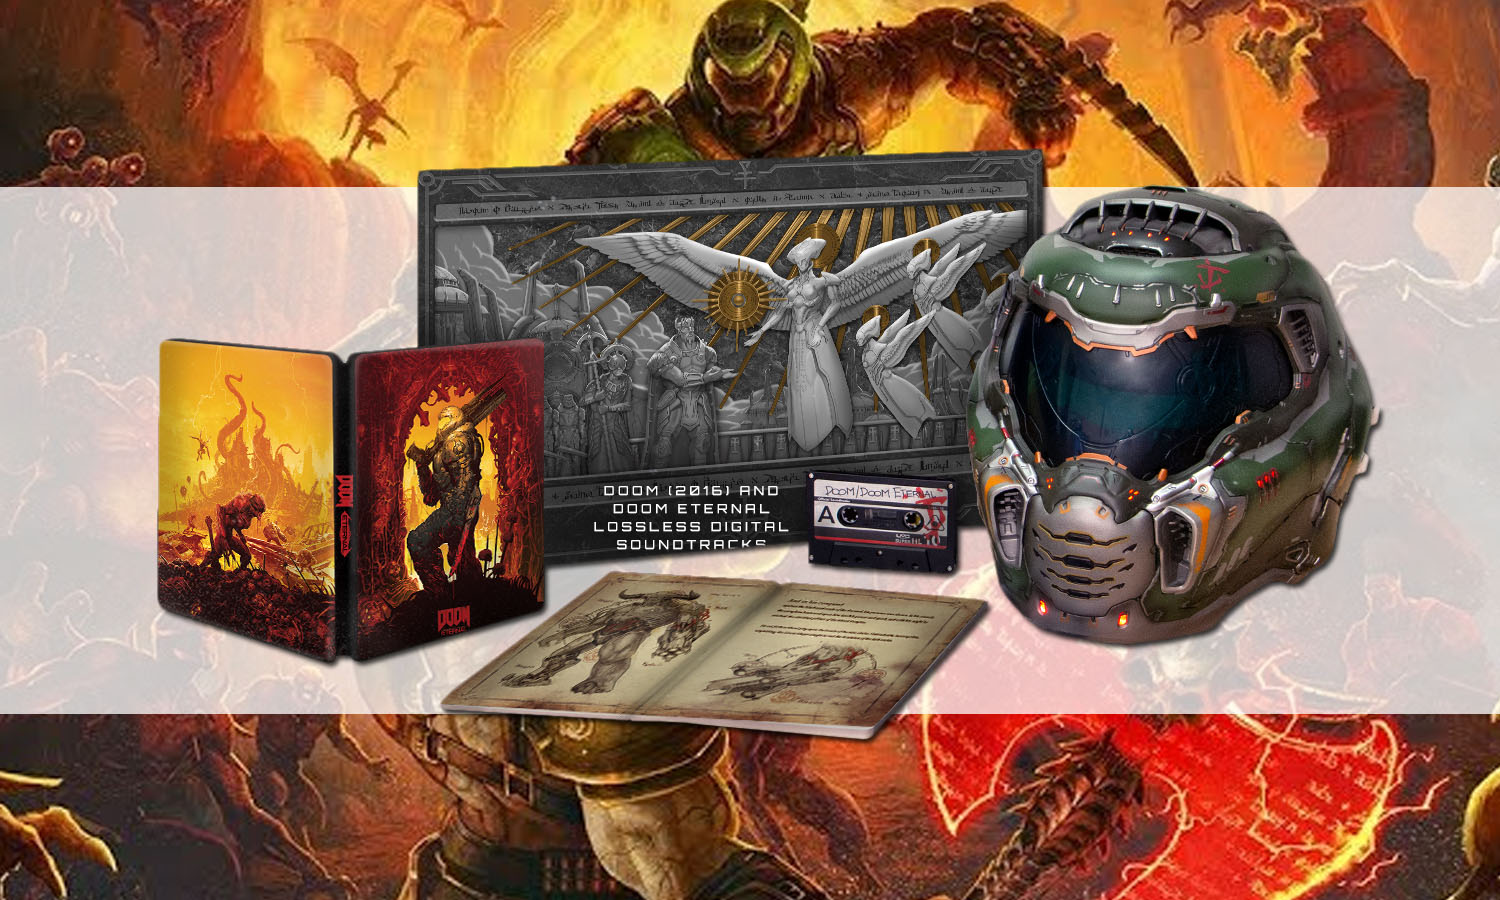 Doom collection. Doom Eternal коллекционка. Doom Eternal Collectors Edition ps4. Doom 2016 коллекционное издание. Коллекционка Doom 2016.